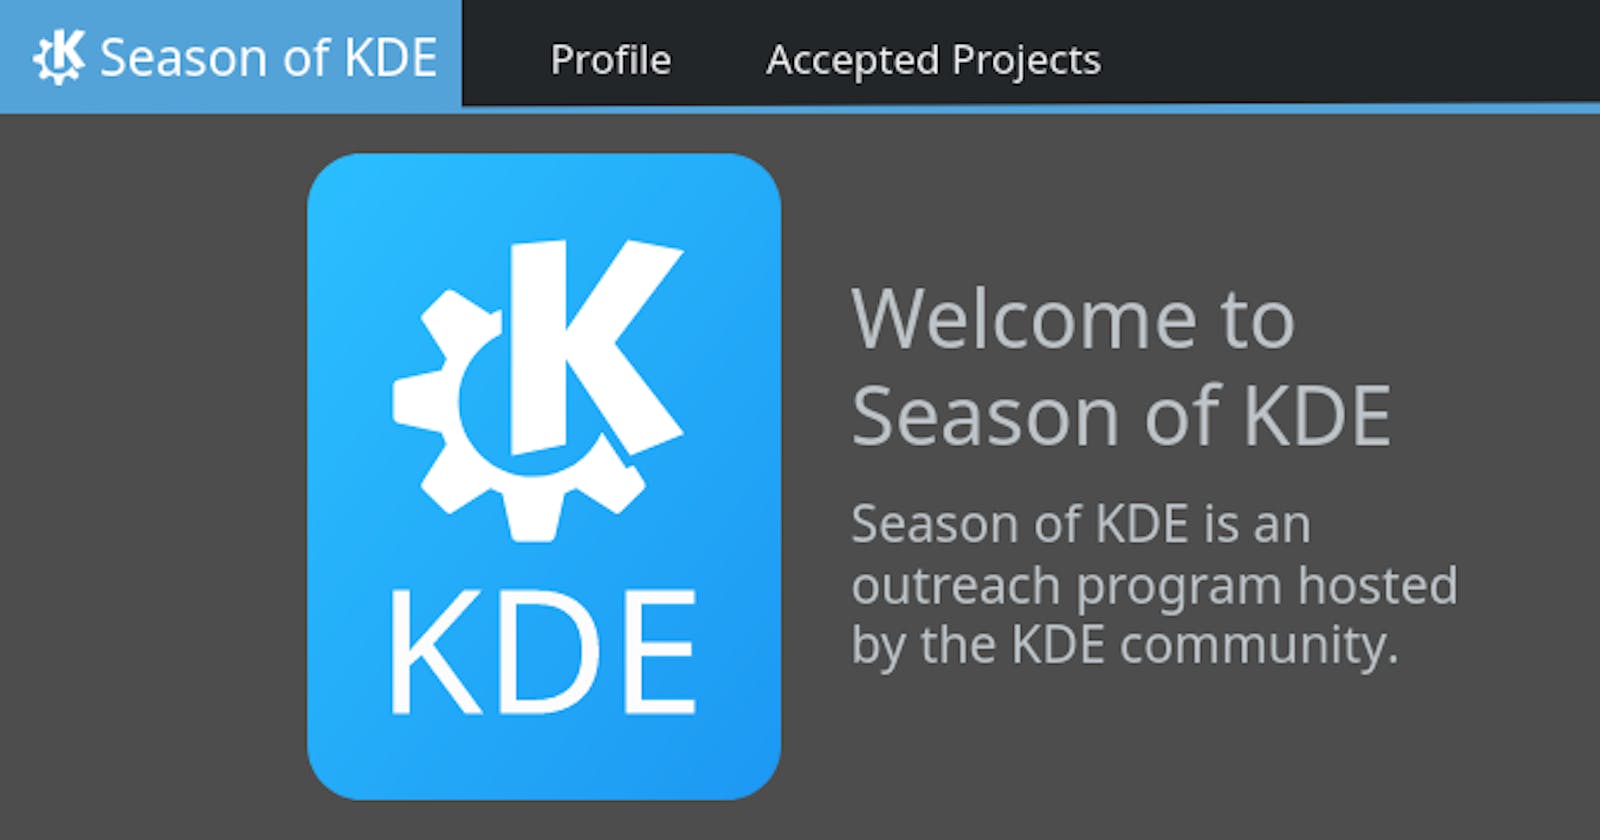 Season of KDE 2021 Final Update